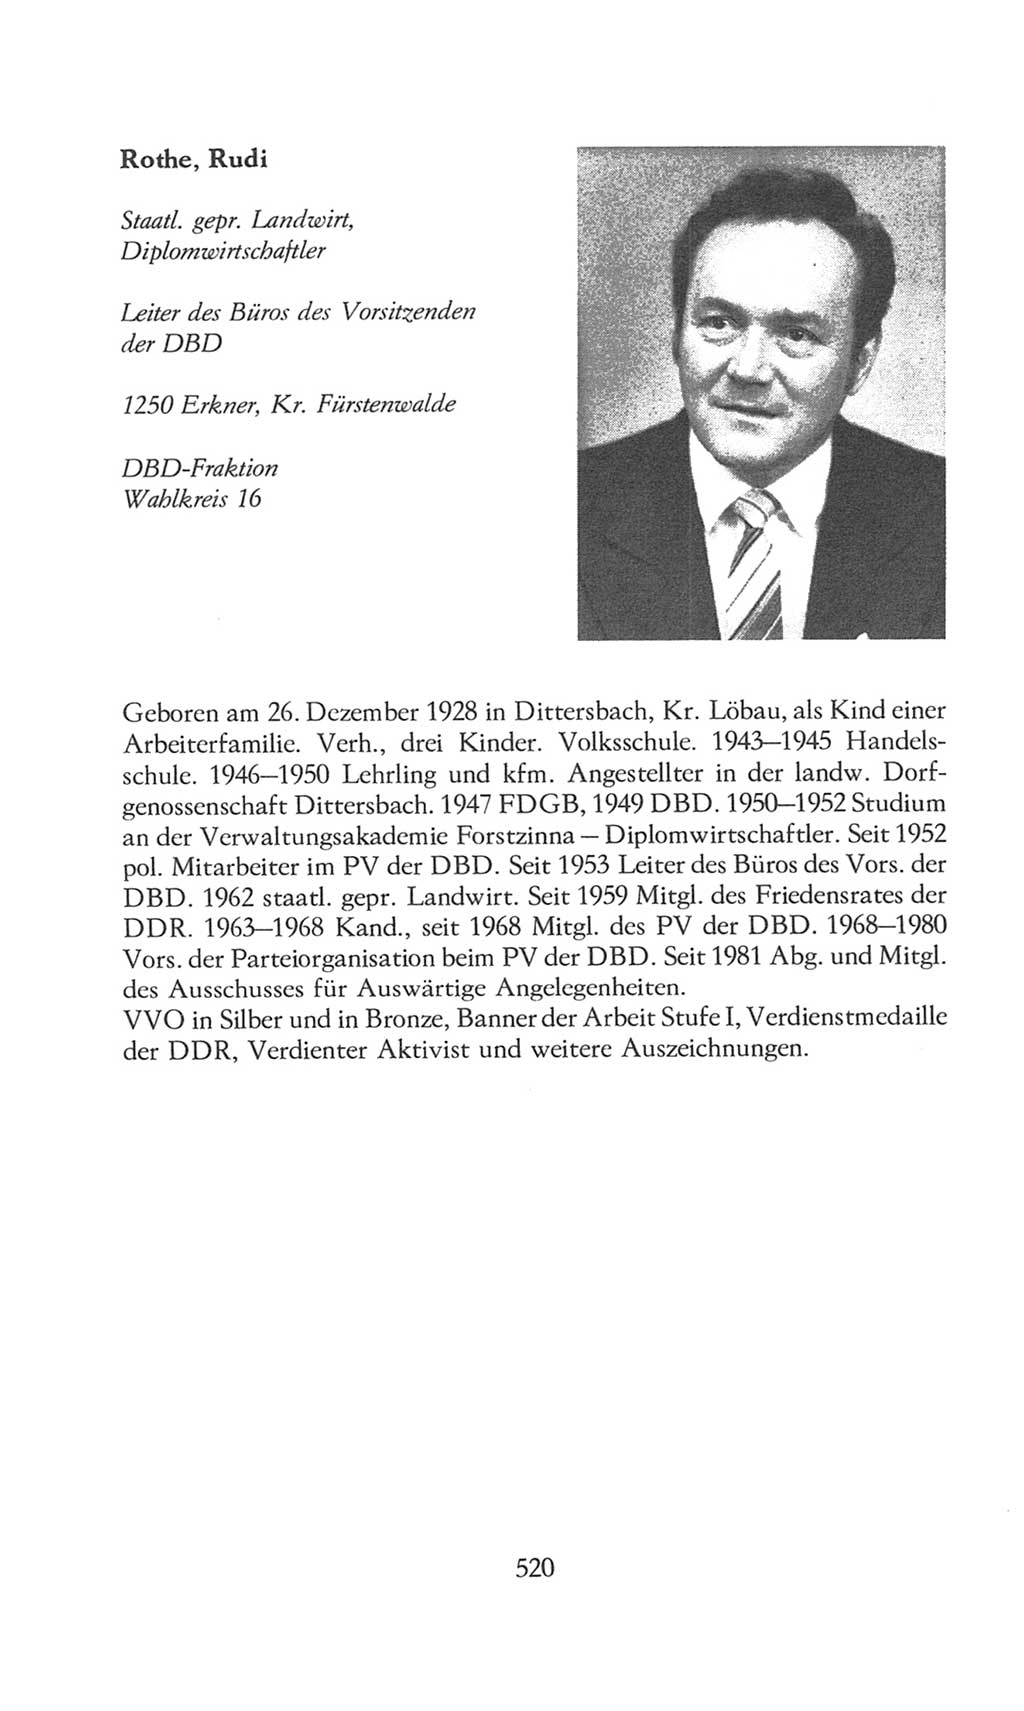 Volkskammer (VK) der Deutschen Demokratischen Republik (DDR), 8. Wahlperiode 1981-1986, Seite 520 (VK. DDR 8. WP. 1981-1986, S. 520)